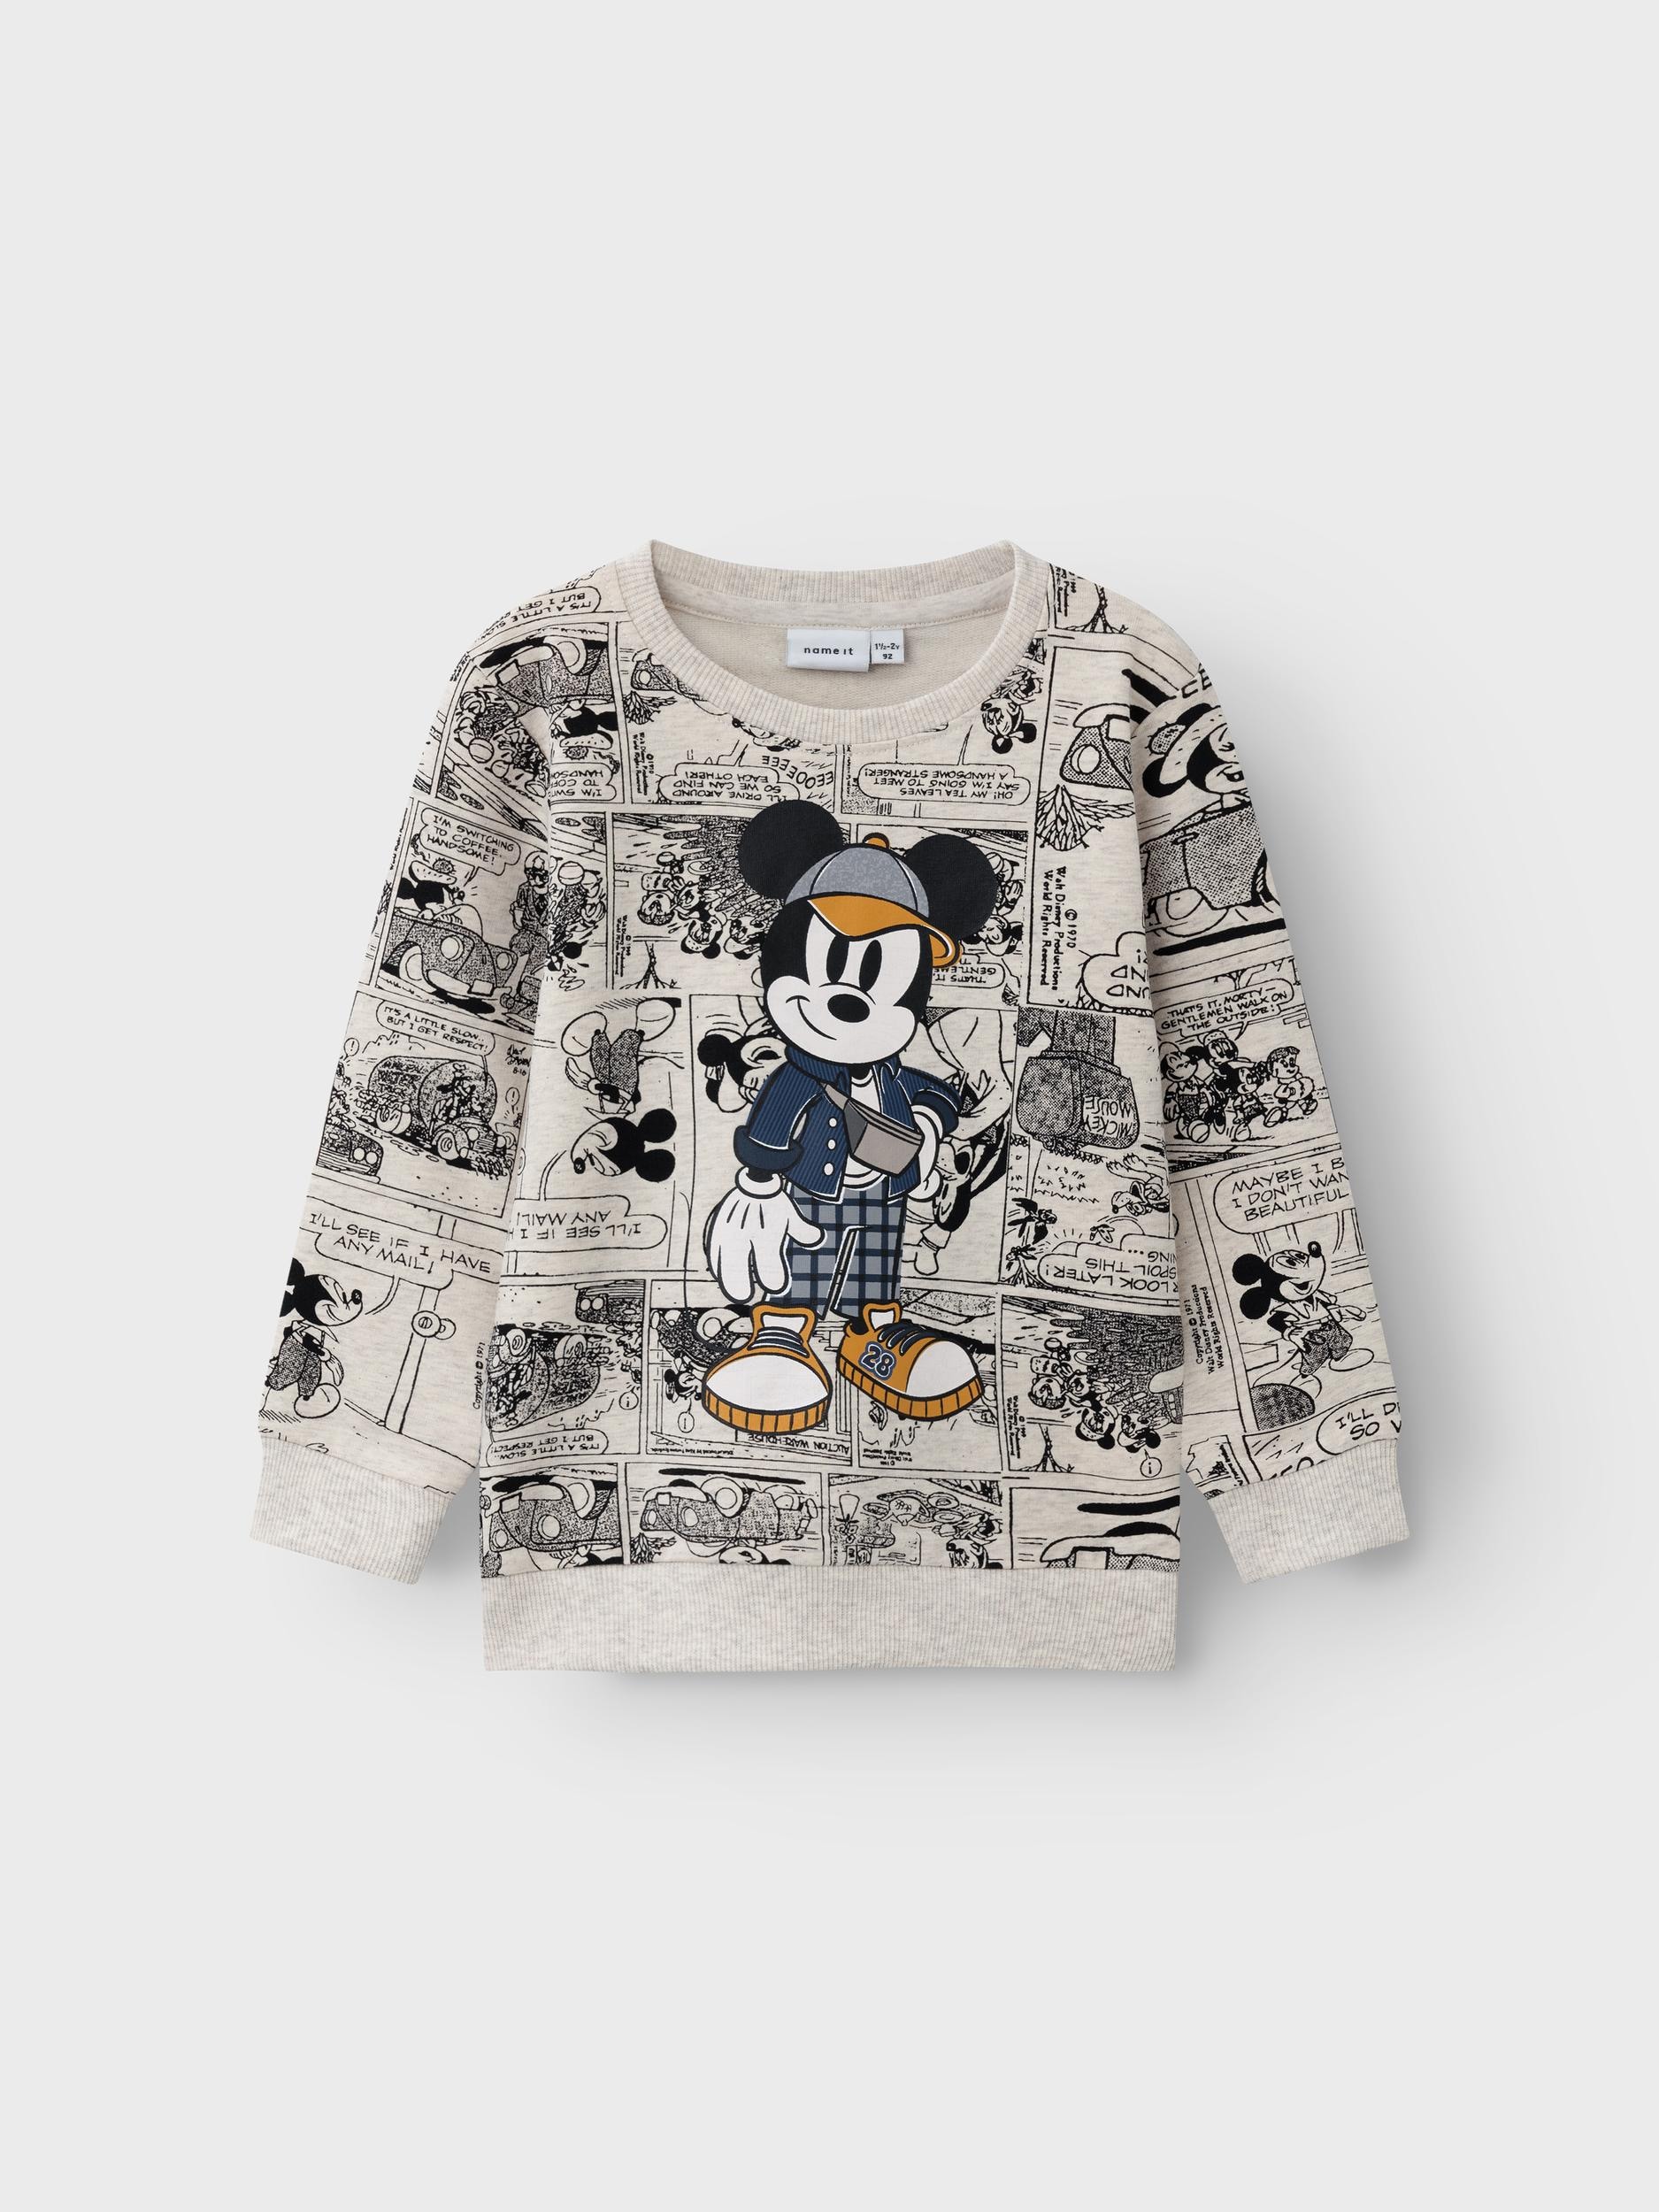 SWEAT Name im It BRU«, MICKEY Online OTTO Shop Sweatshirt »NMMOBIS mit gerippten Ärmelbündchen